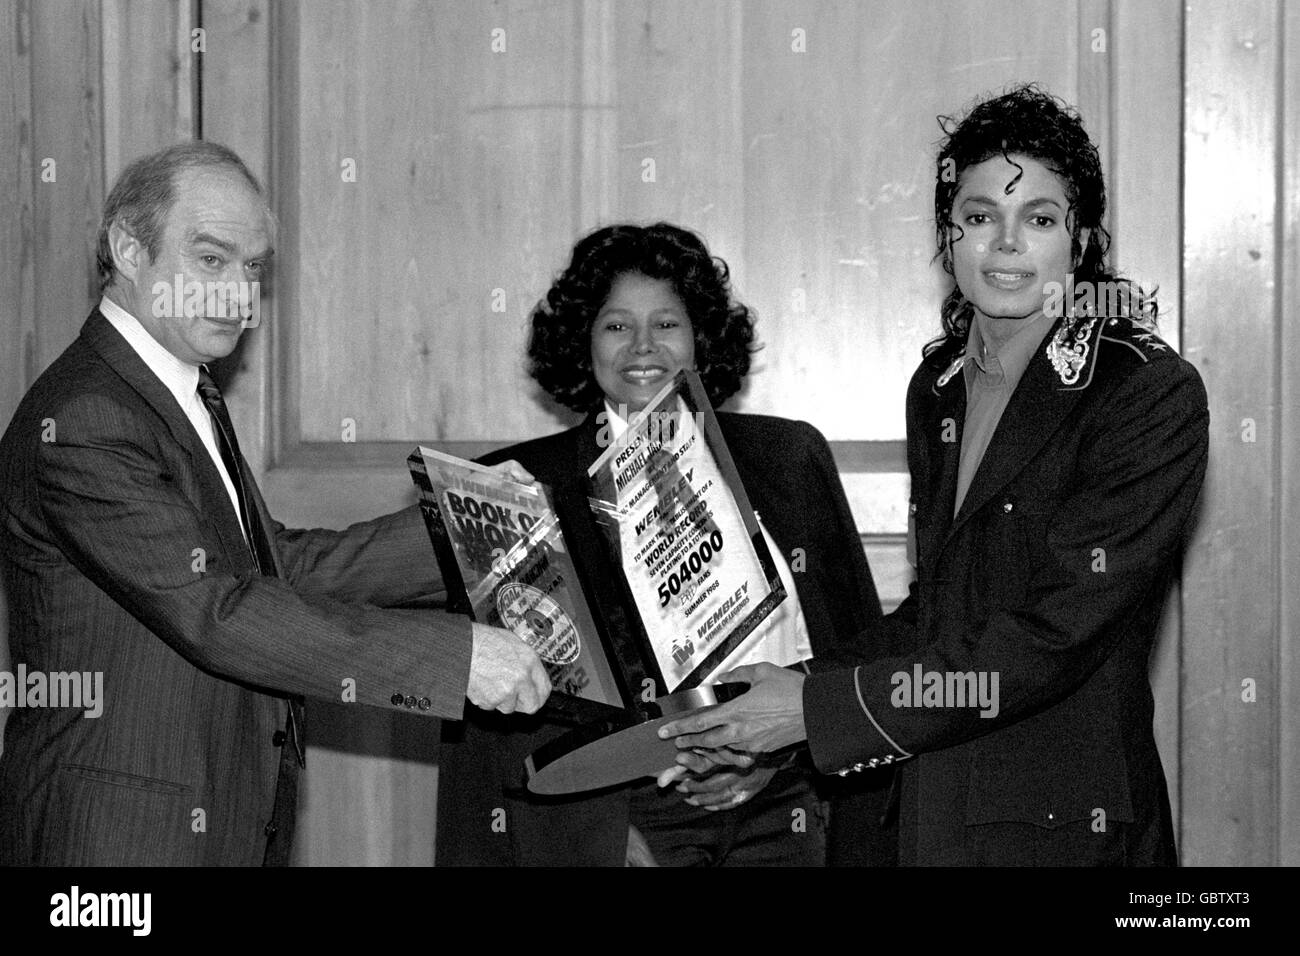 Brian Wolfson, presidente del Wembley Stadium, presenta alla pop star Michael Jackson un premio speciale per celebrare i sette spettacoli di sell-out del cantante a Wembley durante il suo tour nel Regno Unito. La madre della stella, Katherine Jackson, guarda la presentazione al Mayfair Hotel di Londra. Foto Stock